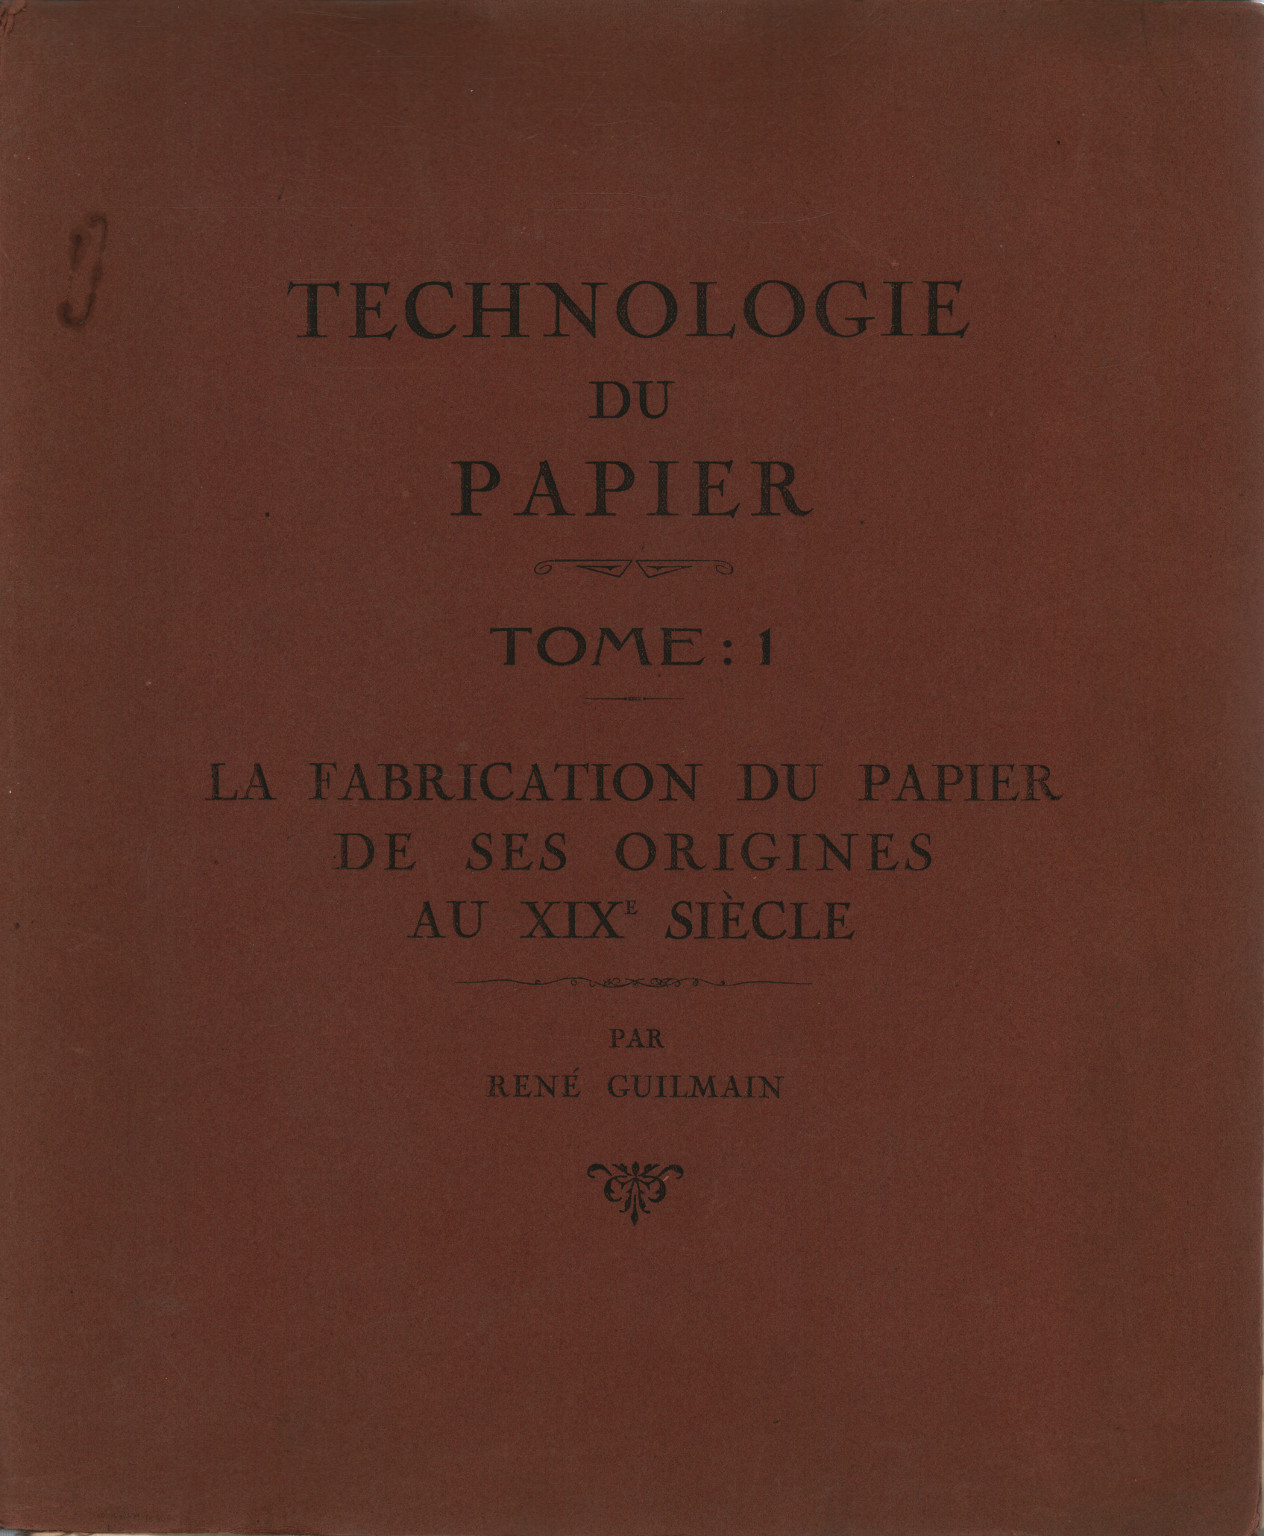 Technologie du papier. Tome: 1, s.a.